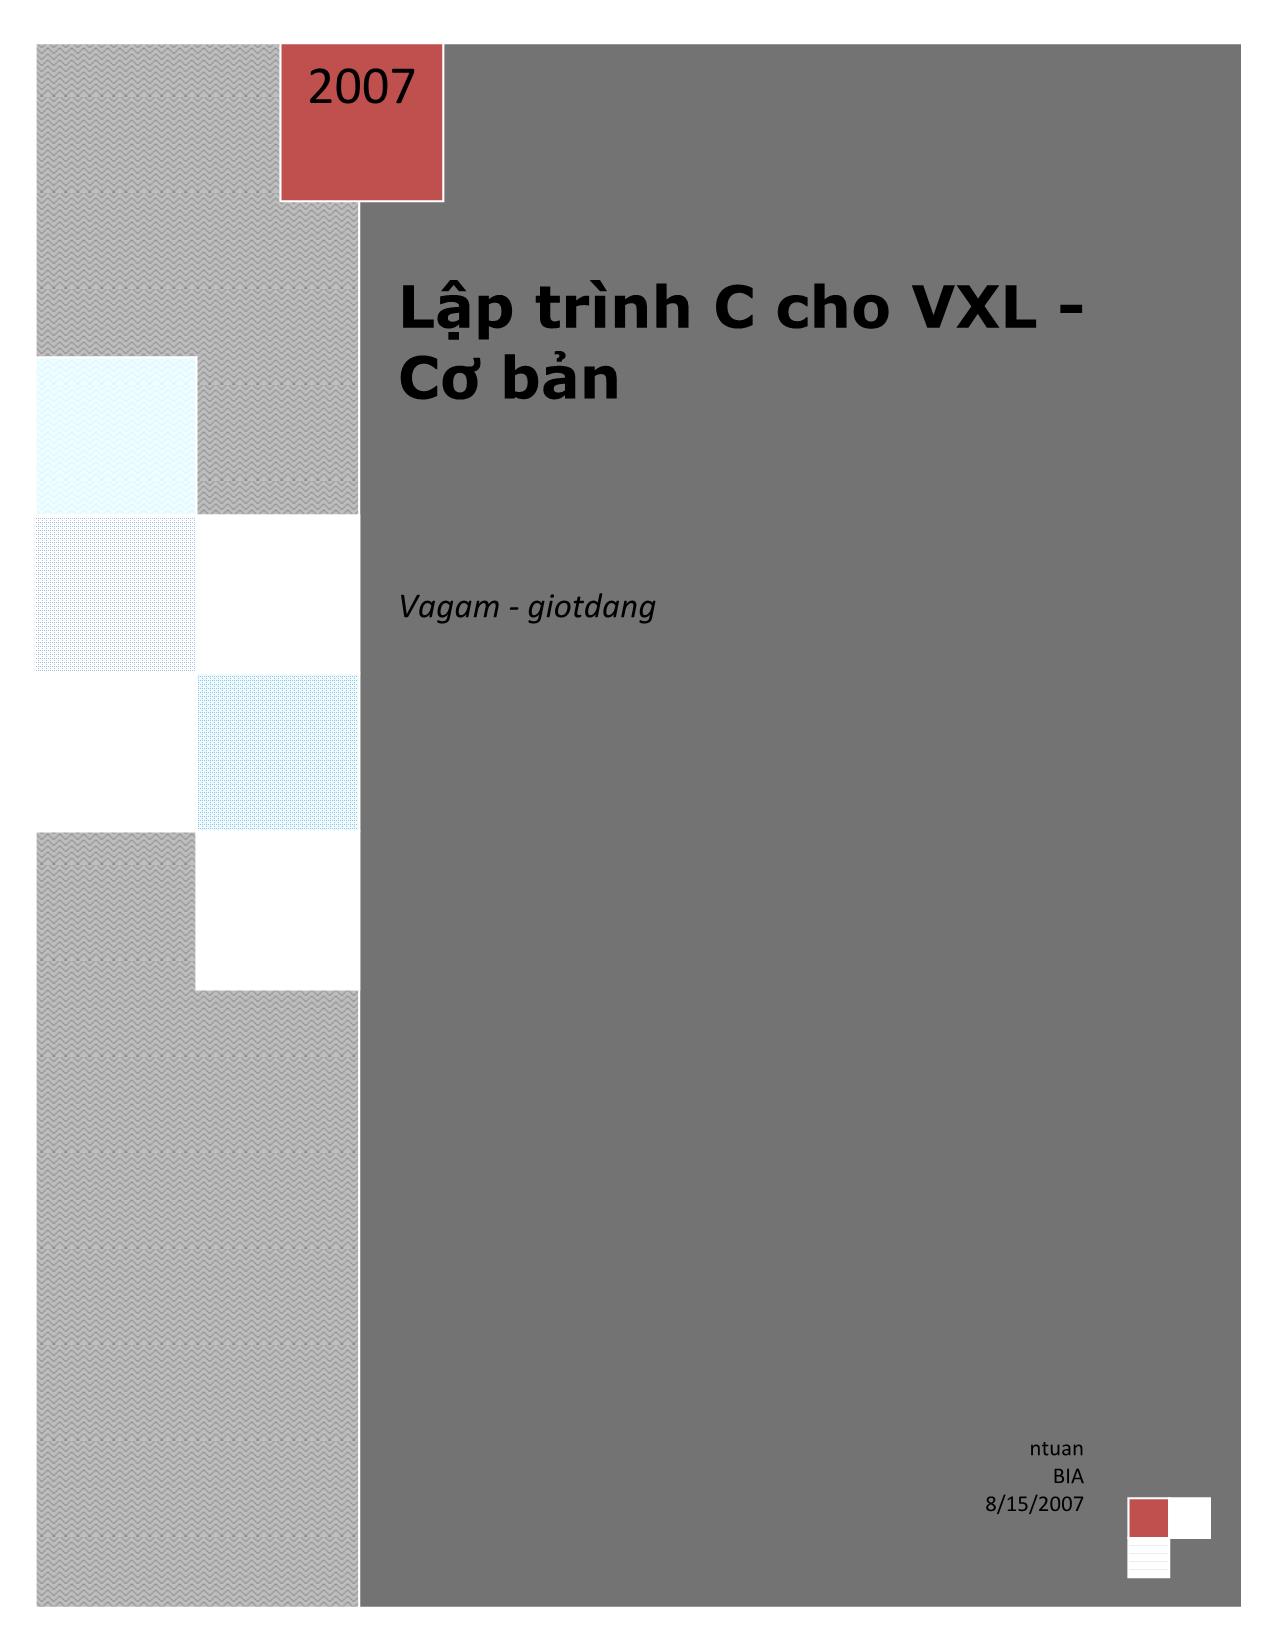 Lập trình C cho Vi xử lý cơ bản trang 1